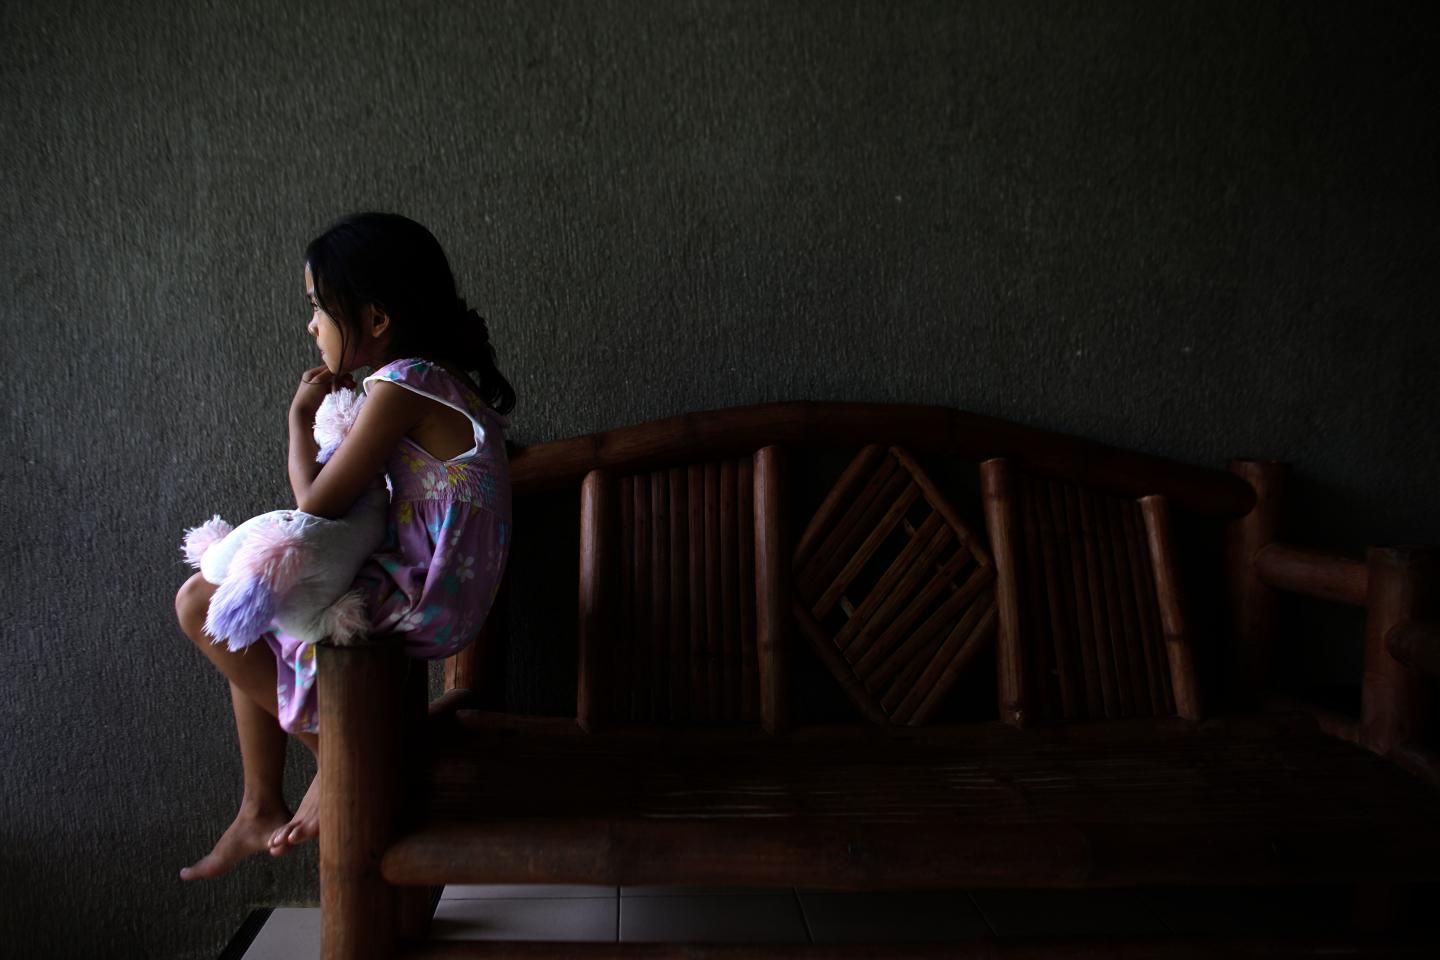 Έρευνα για τη σεξουαλική κακοποίηση παιδιών αποκαλύπτει διαστάσεις επιδημίας